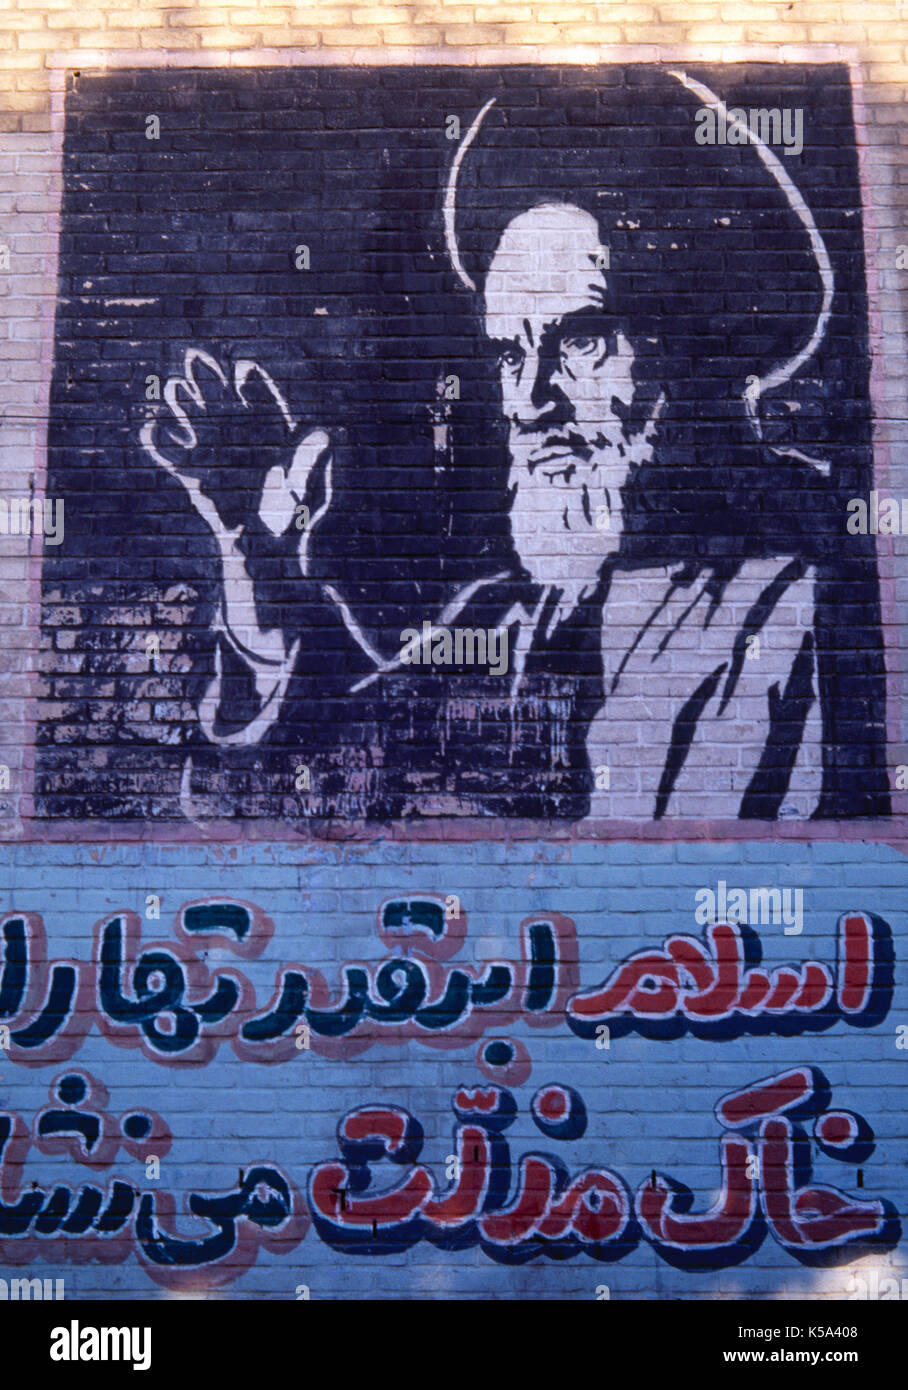 Ruhollah Khomeini (1902-1989). Ayatollah Khomeini war ein iranischer Schiitischen religiösen Führer, Philosoph und Revolutionär. Die Propagandistischen Wandbild. Moschee von Teheran, Islamische Republik Iran. Stockfoto